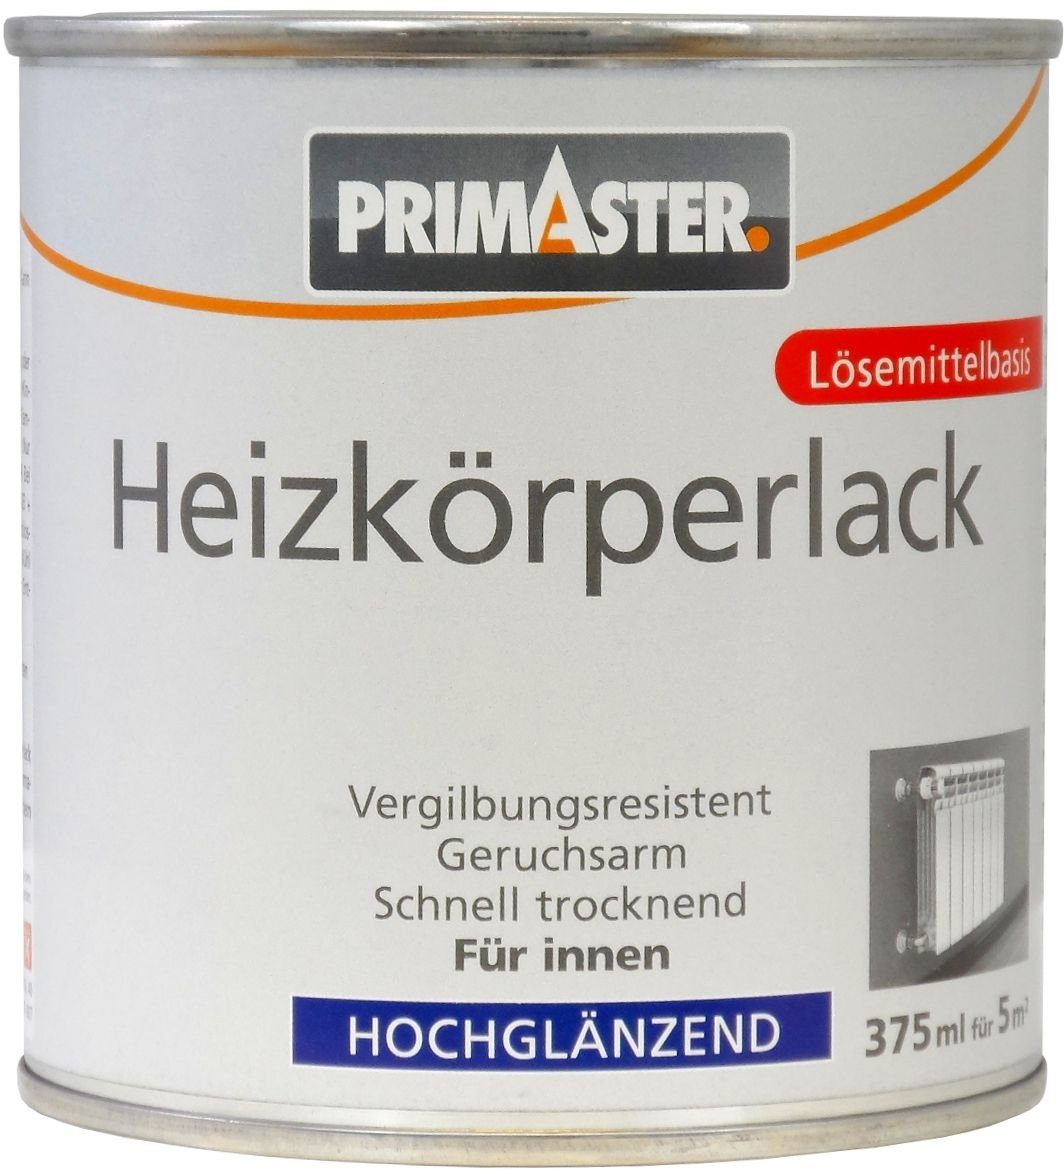 Primaster Heizkörperlack Primaster Heizkörperlack 375 ml weiß hochglänzend